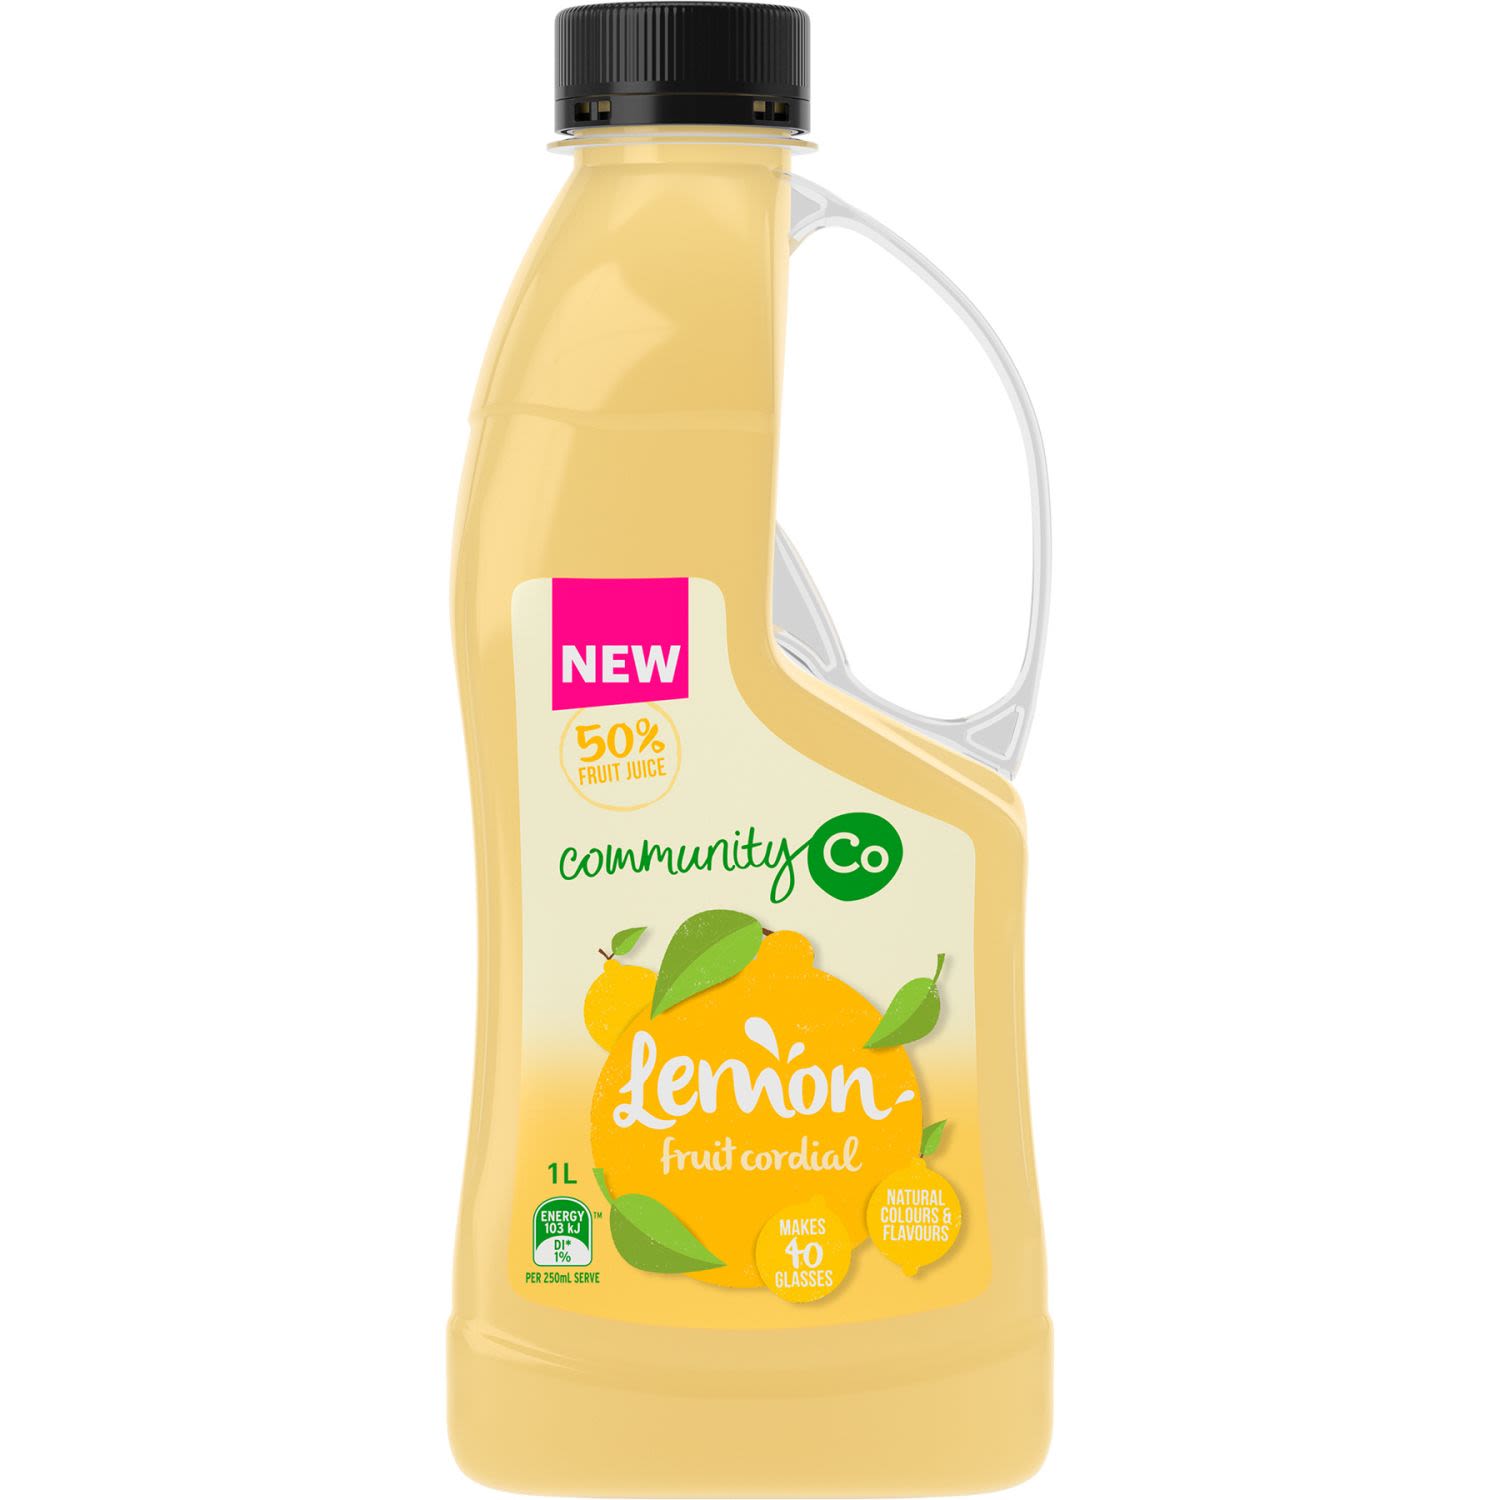 Community Co Cordial Lemon, 1 Litre